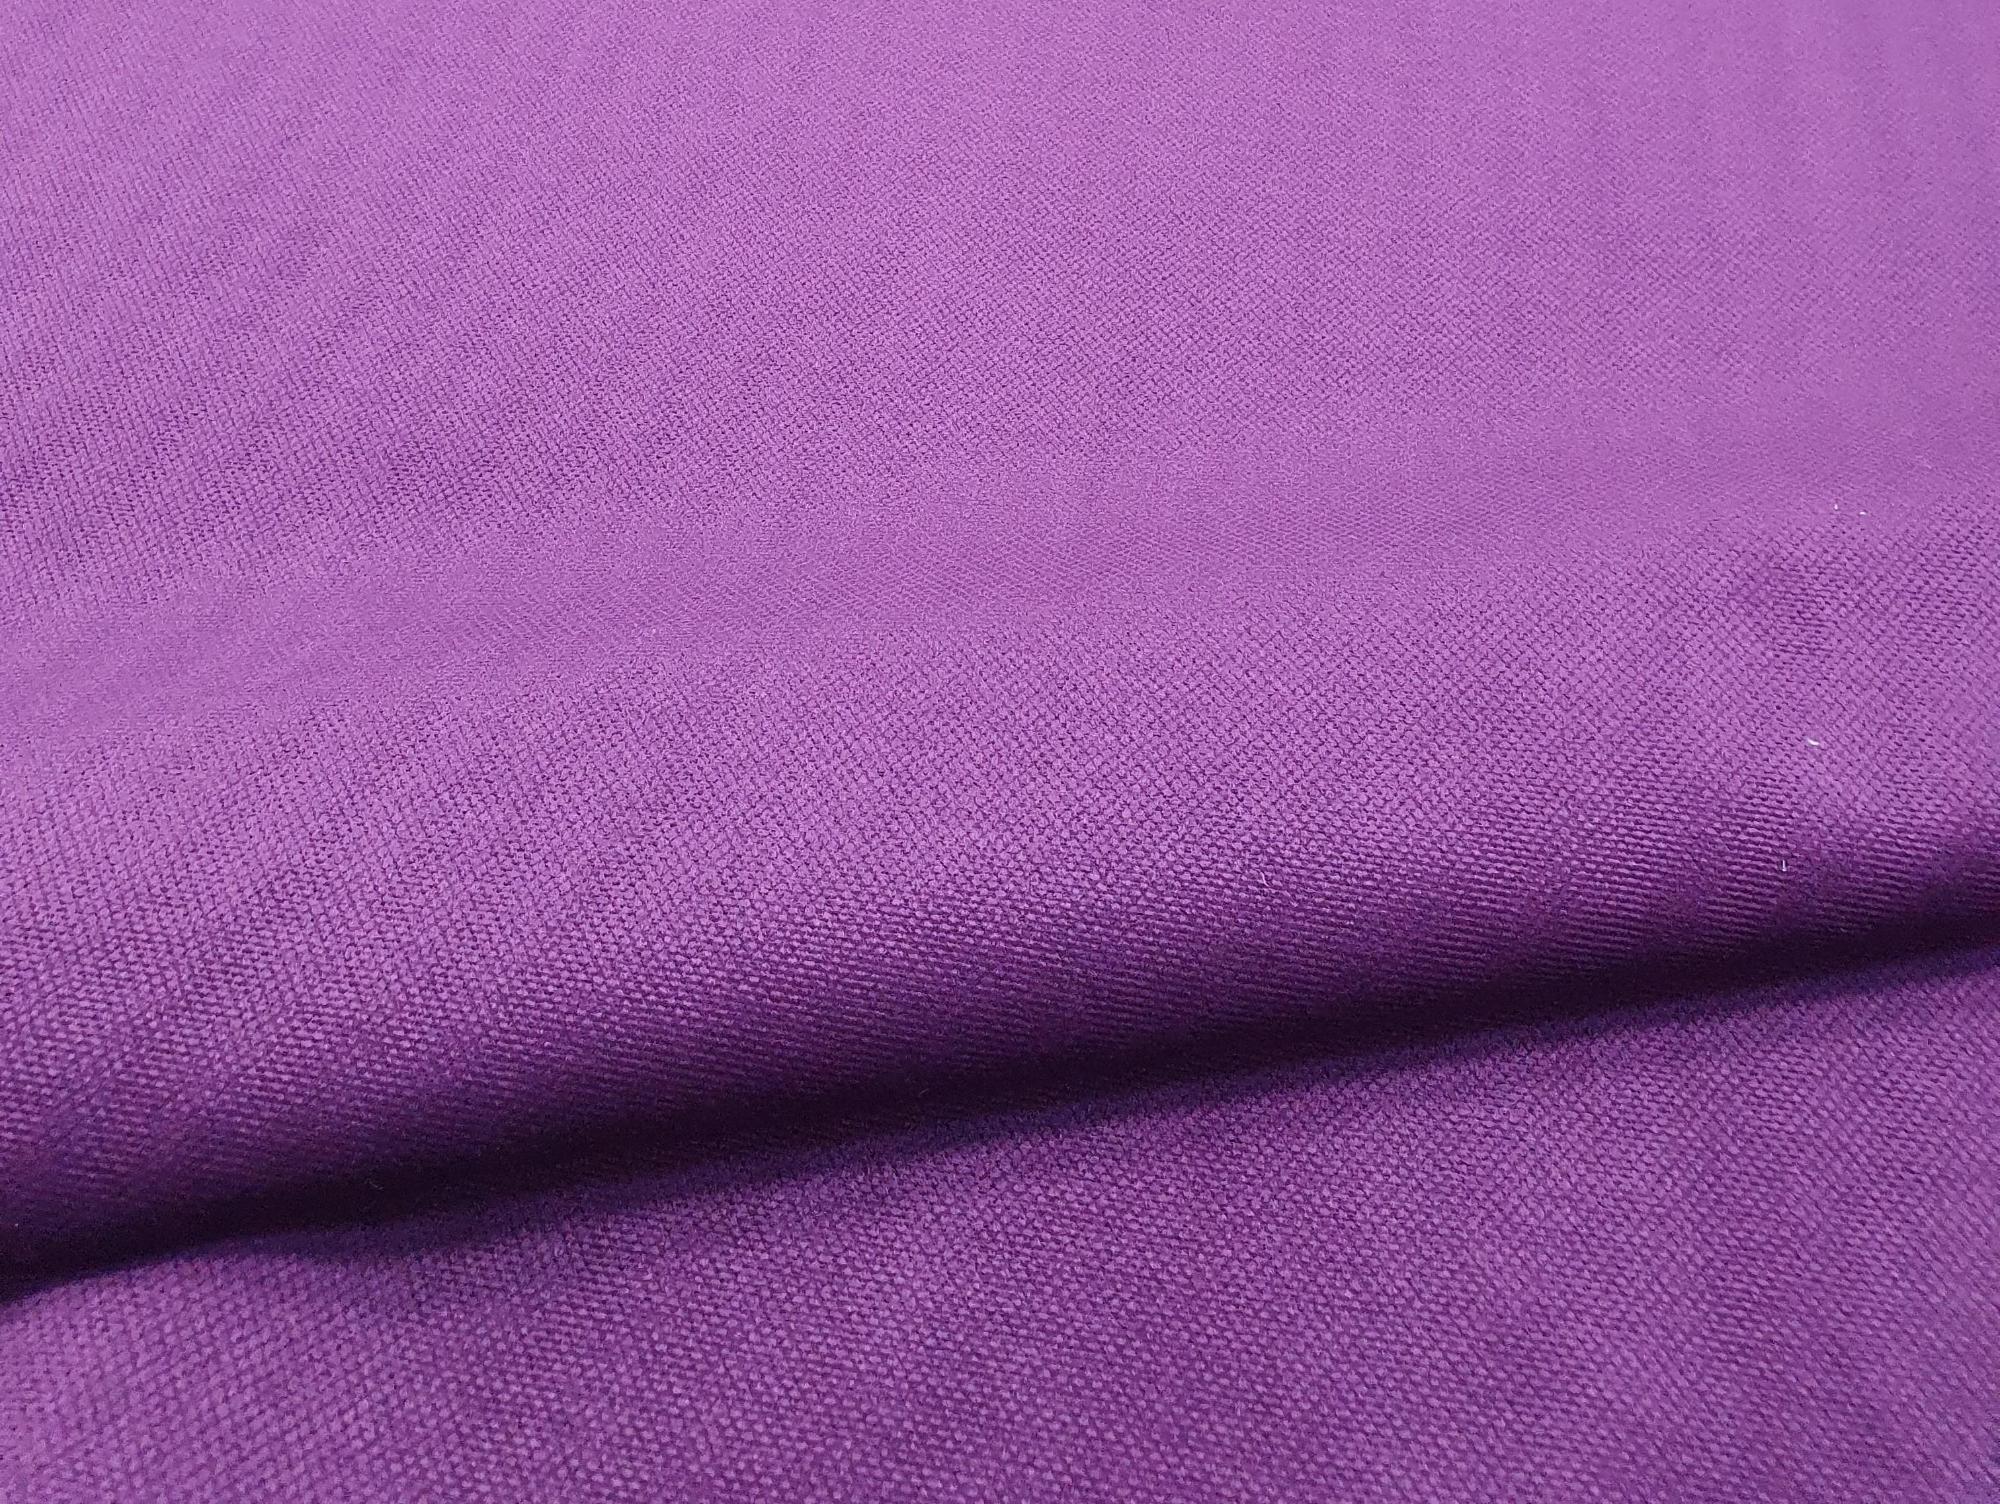 Кресло-кровать Мираж (Фиолетовый\Черный)